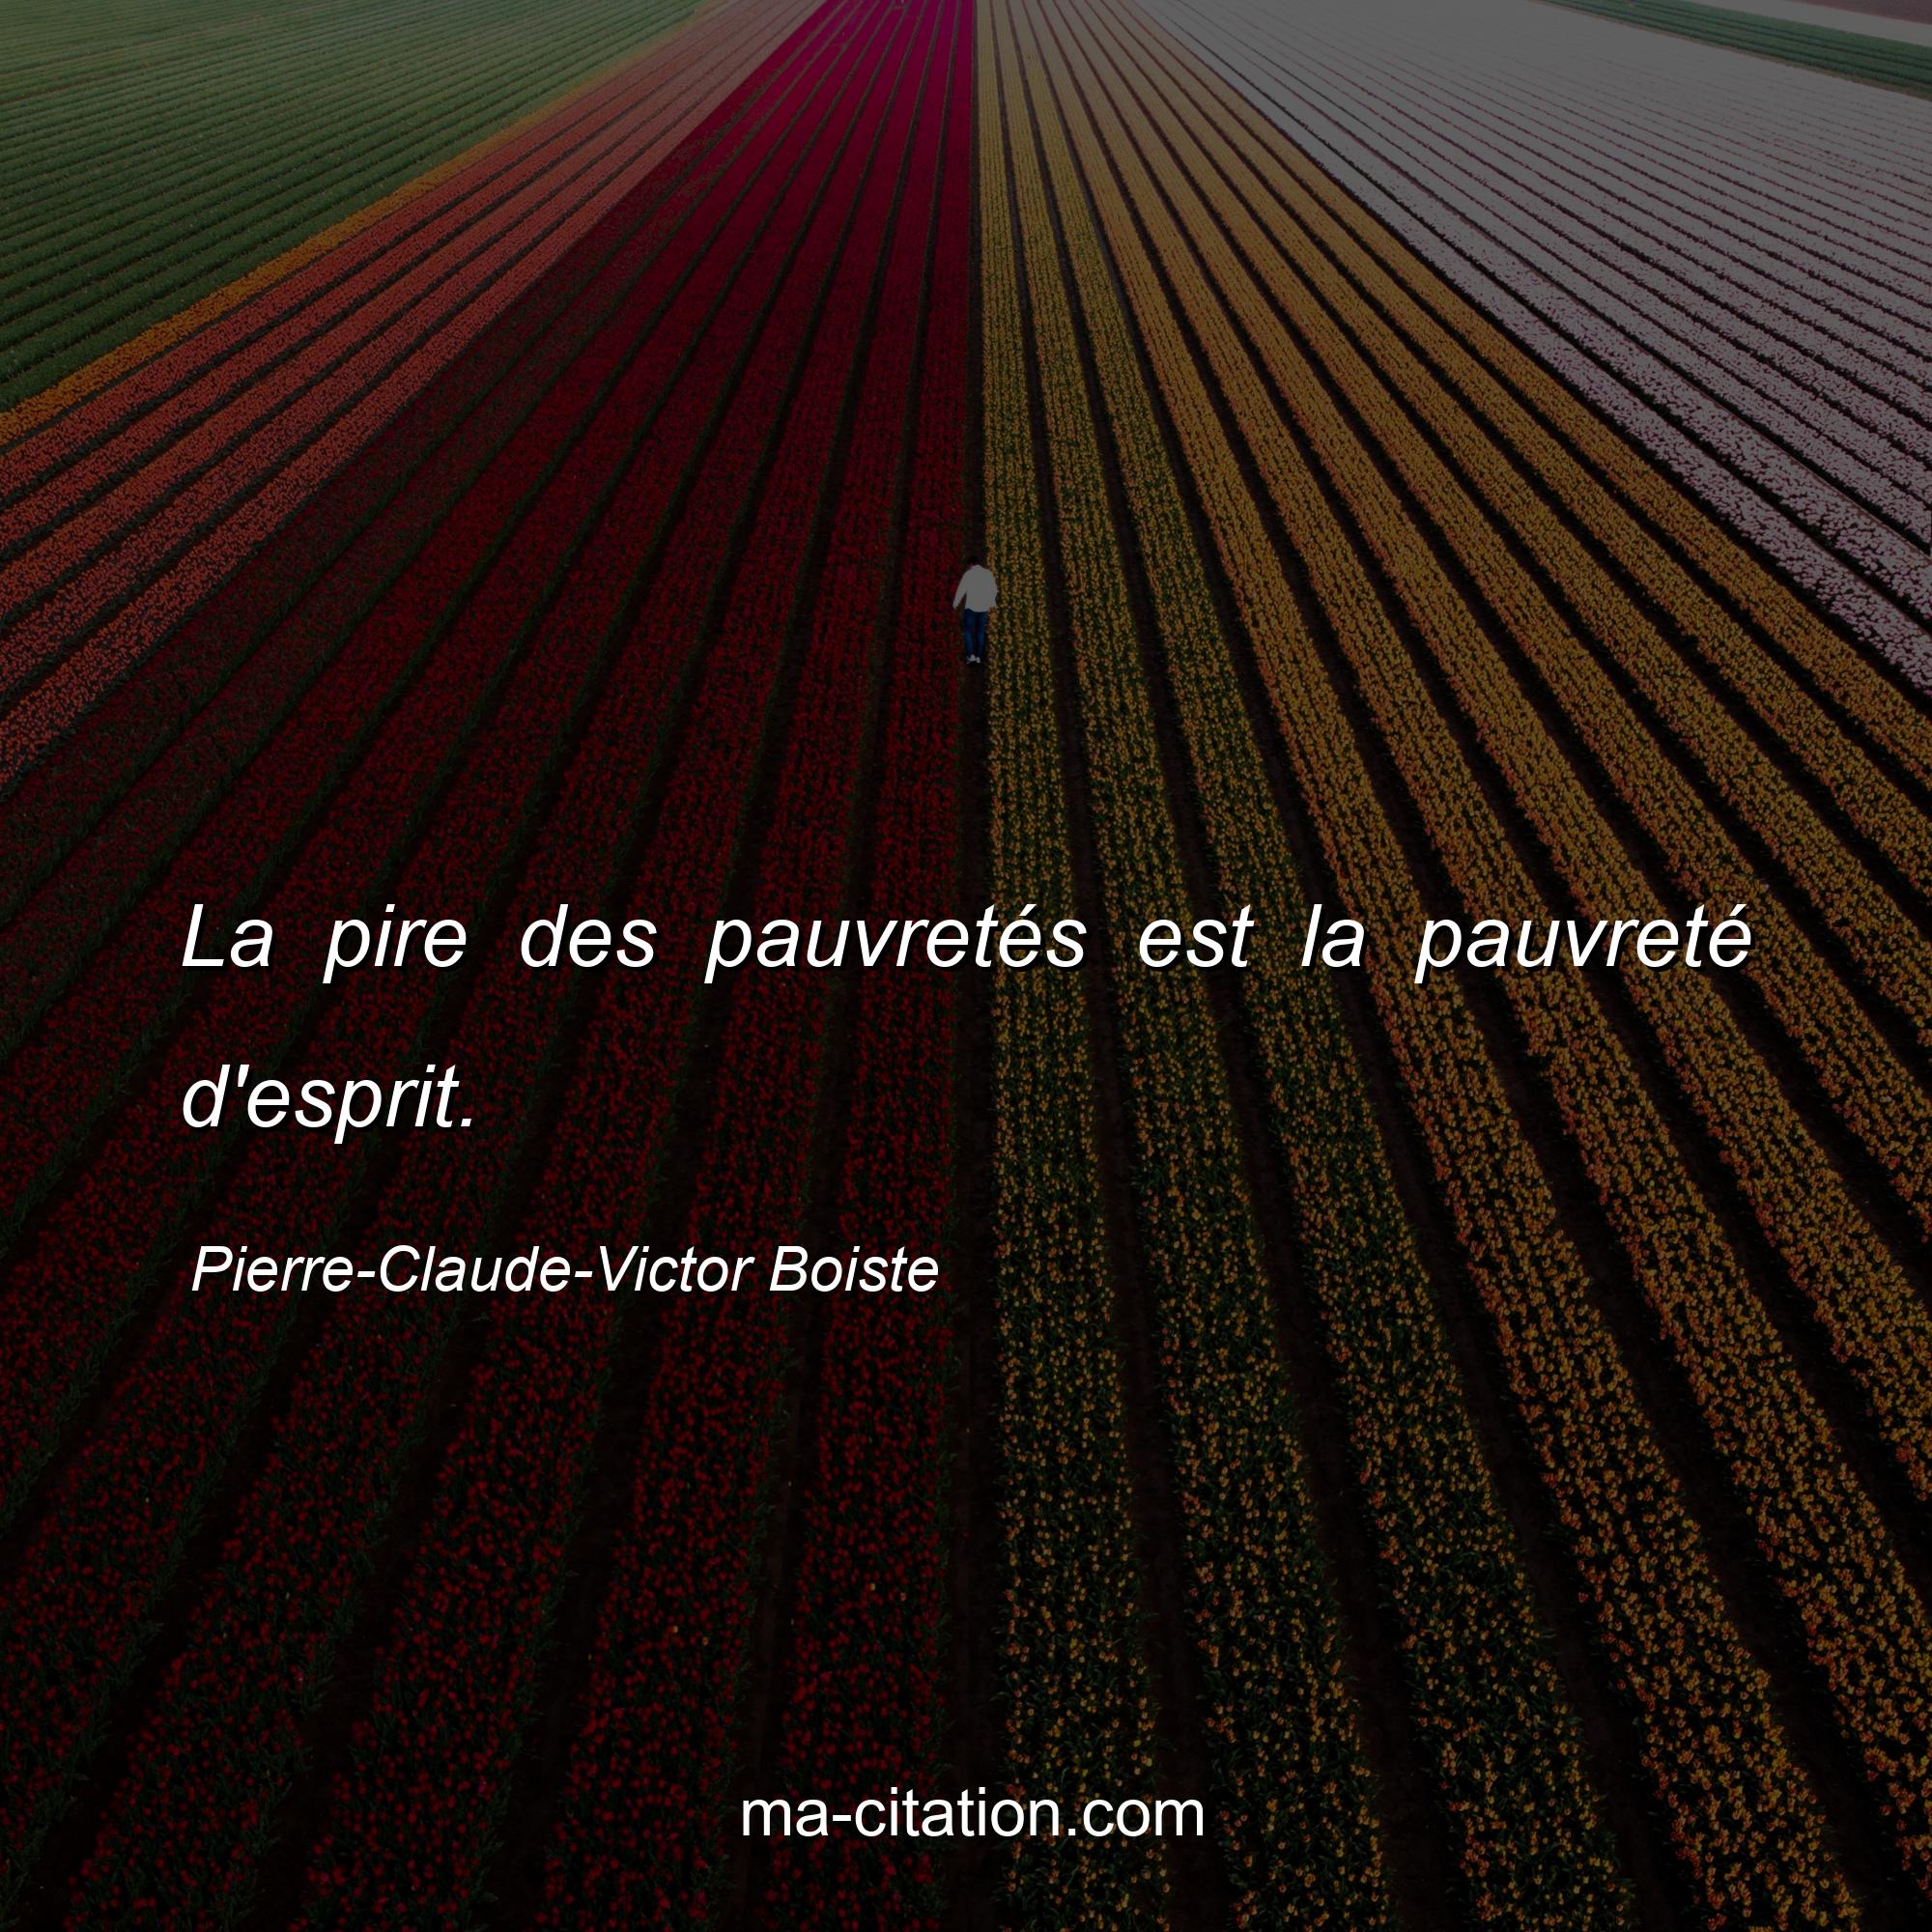 Pierre-Claude-Victor Boiste : La pire des pauvretés est la pauvreté d'esprit. 